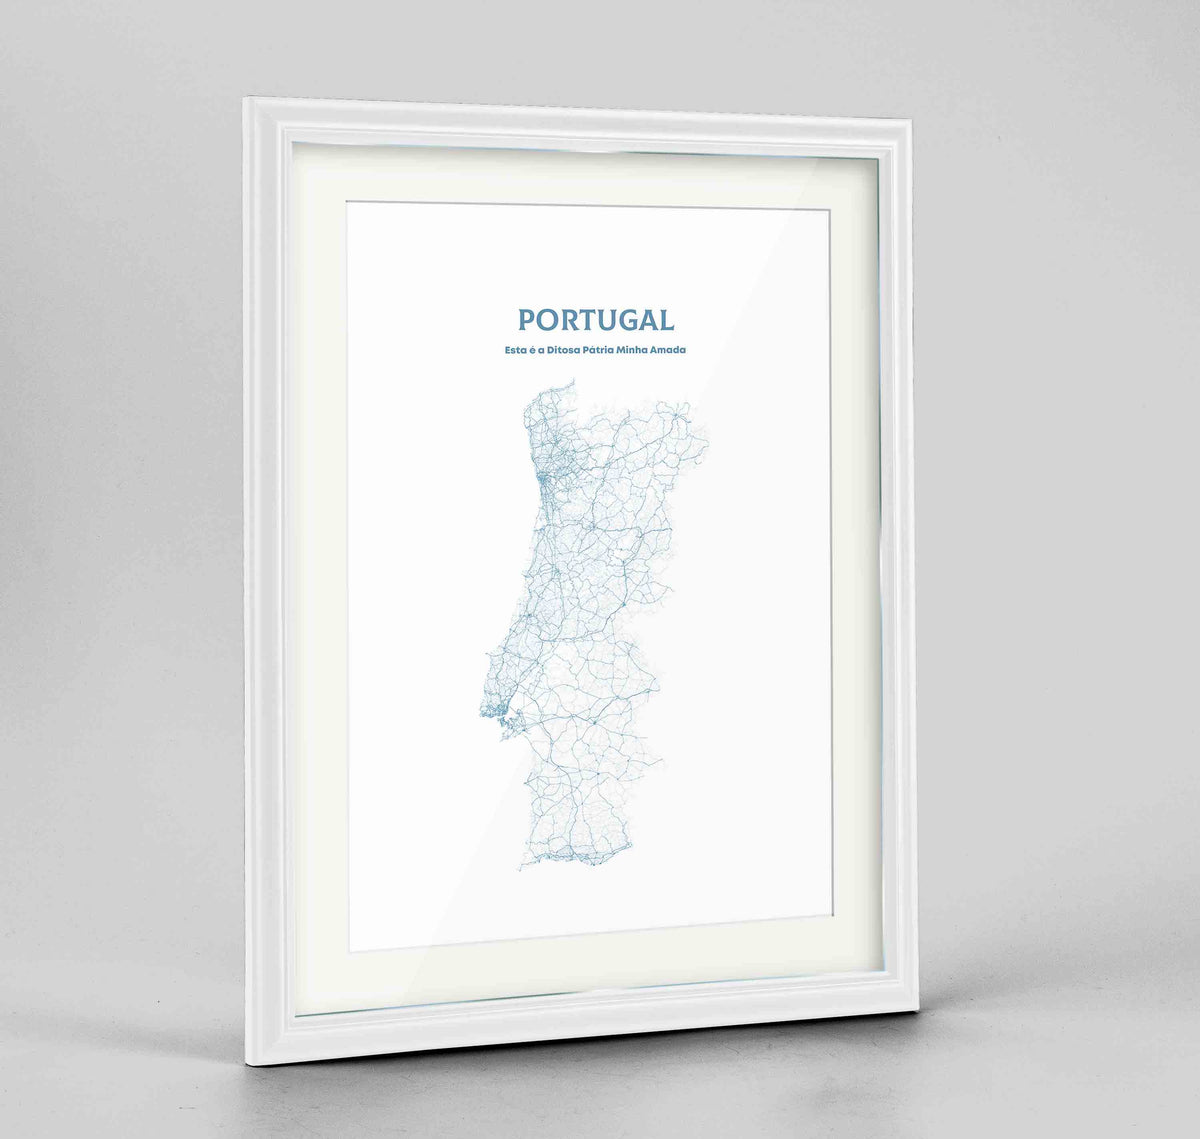 Portugal - All Roads Art Print - Framed